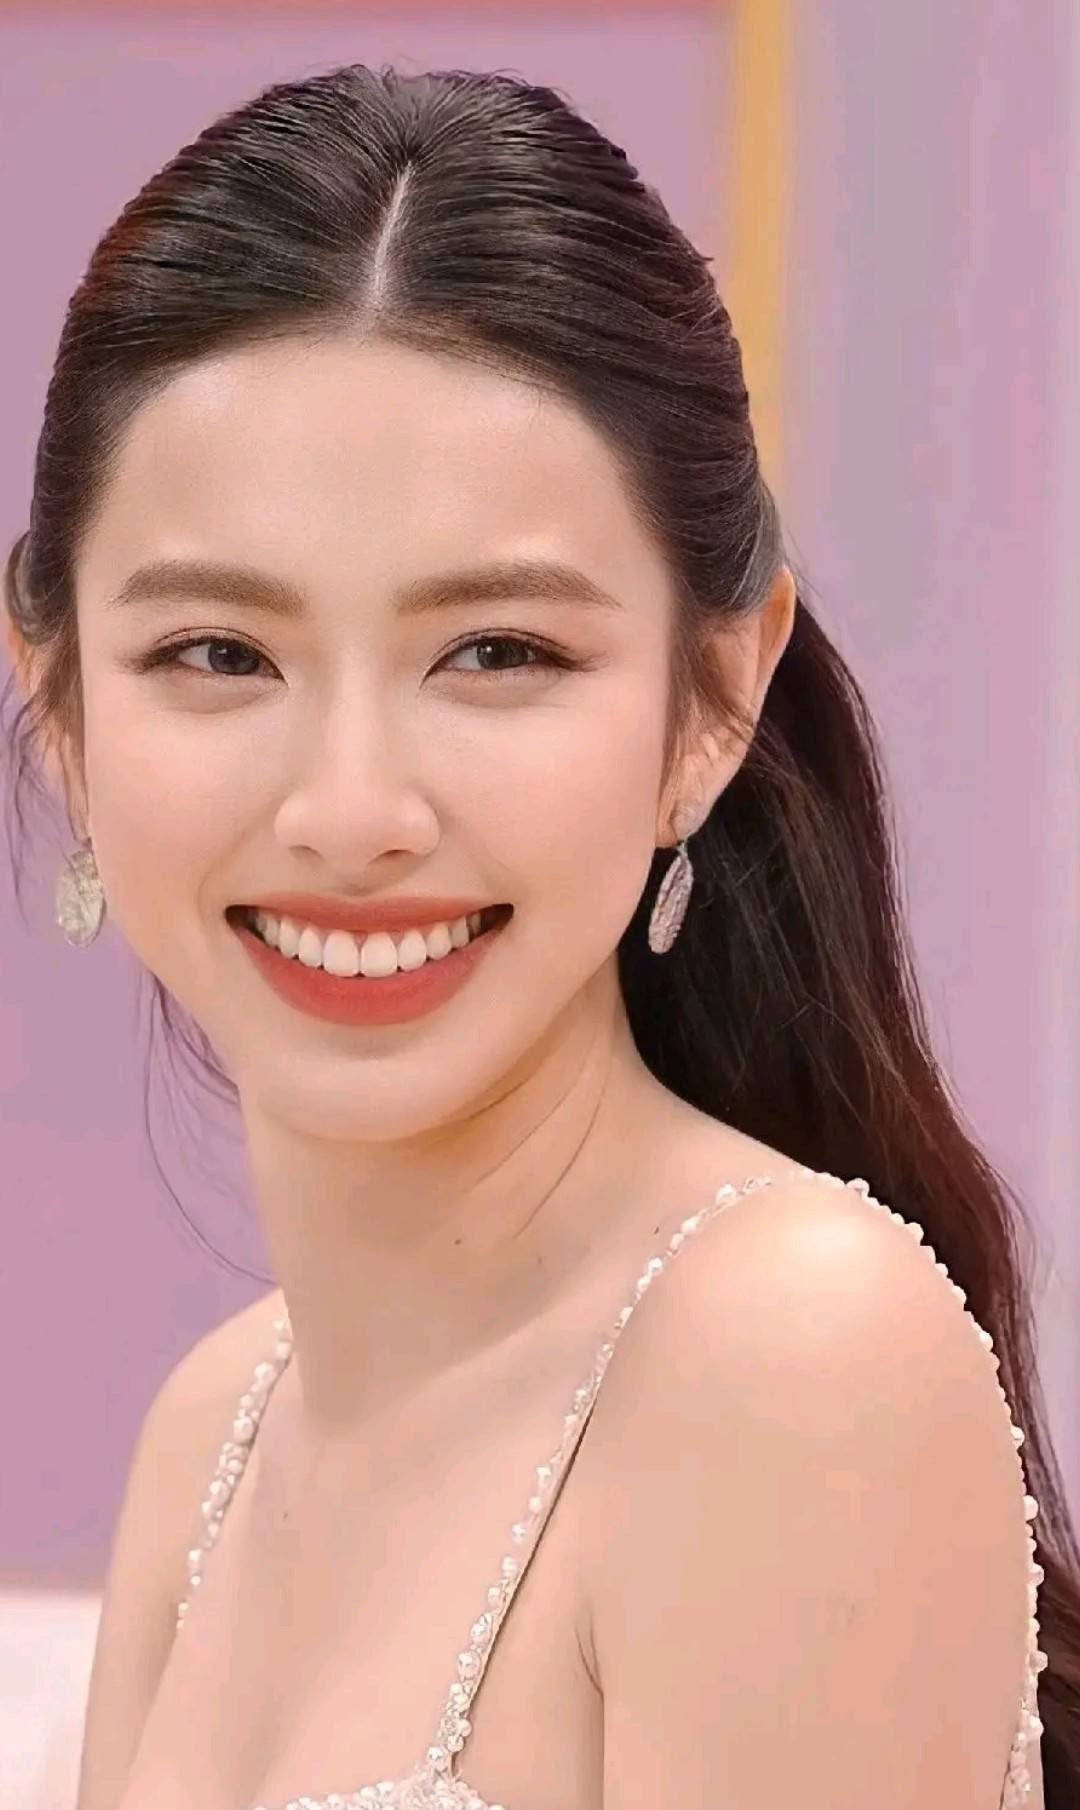 Hoa hậu Thùy Tiên đẹp 'phát sáng' trên sóng truyền hình - Ảnh 2